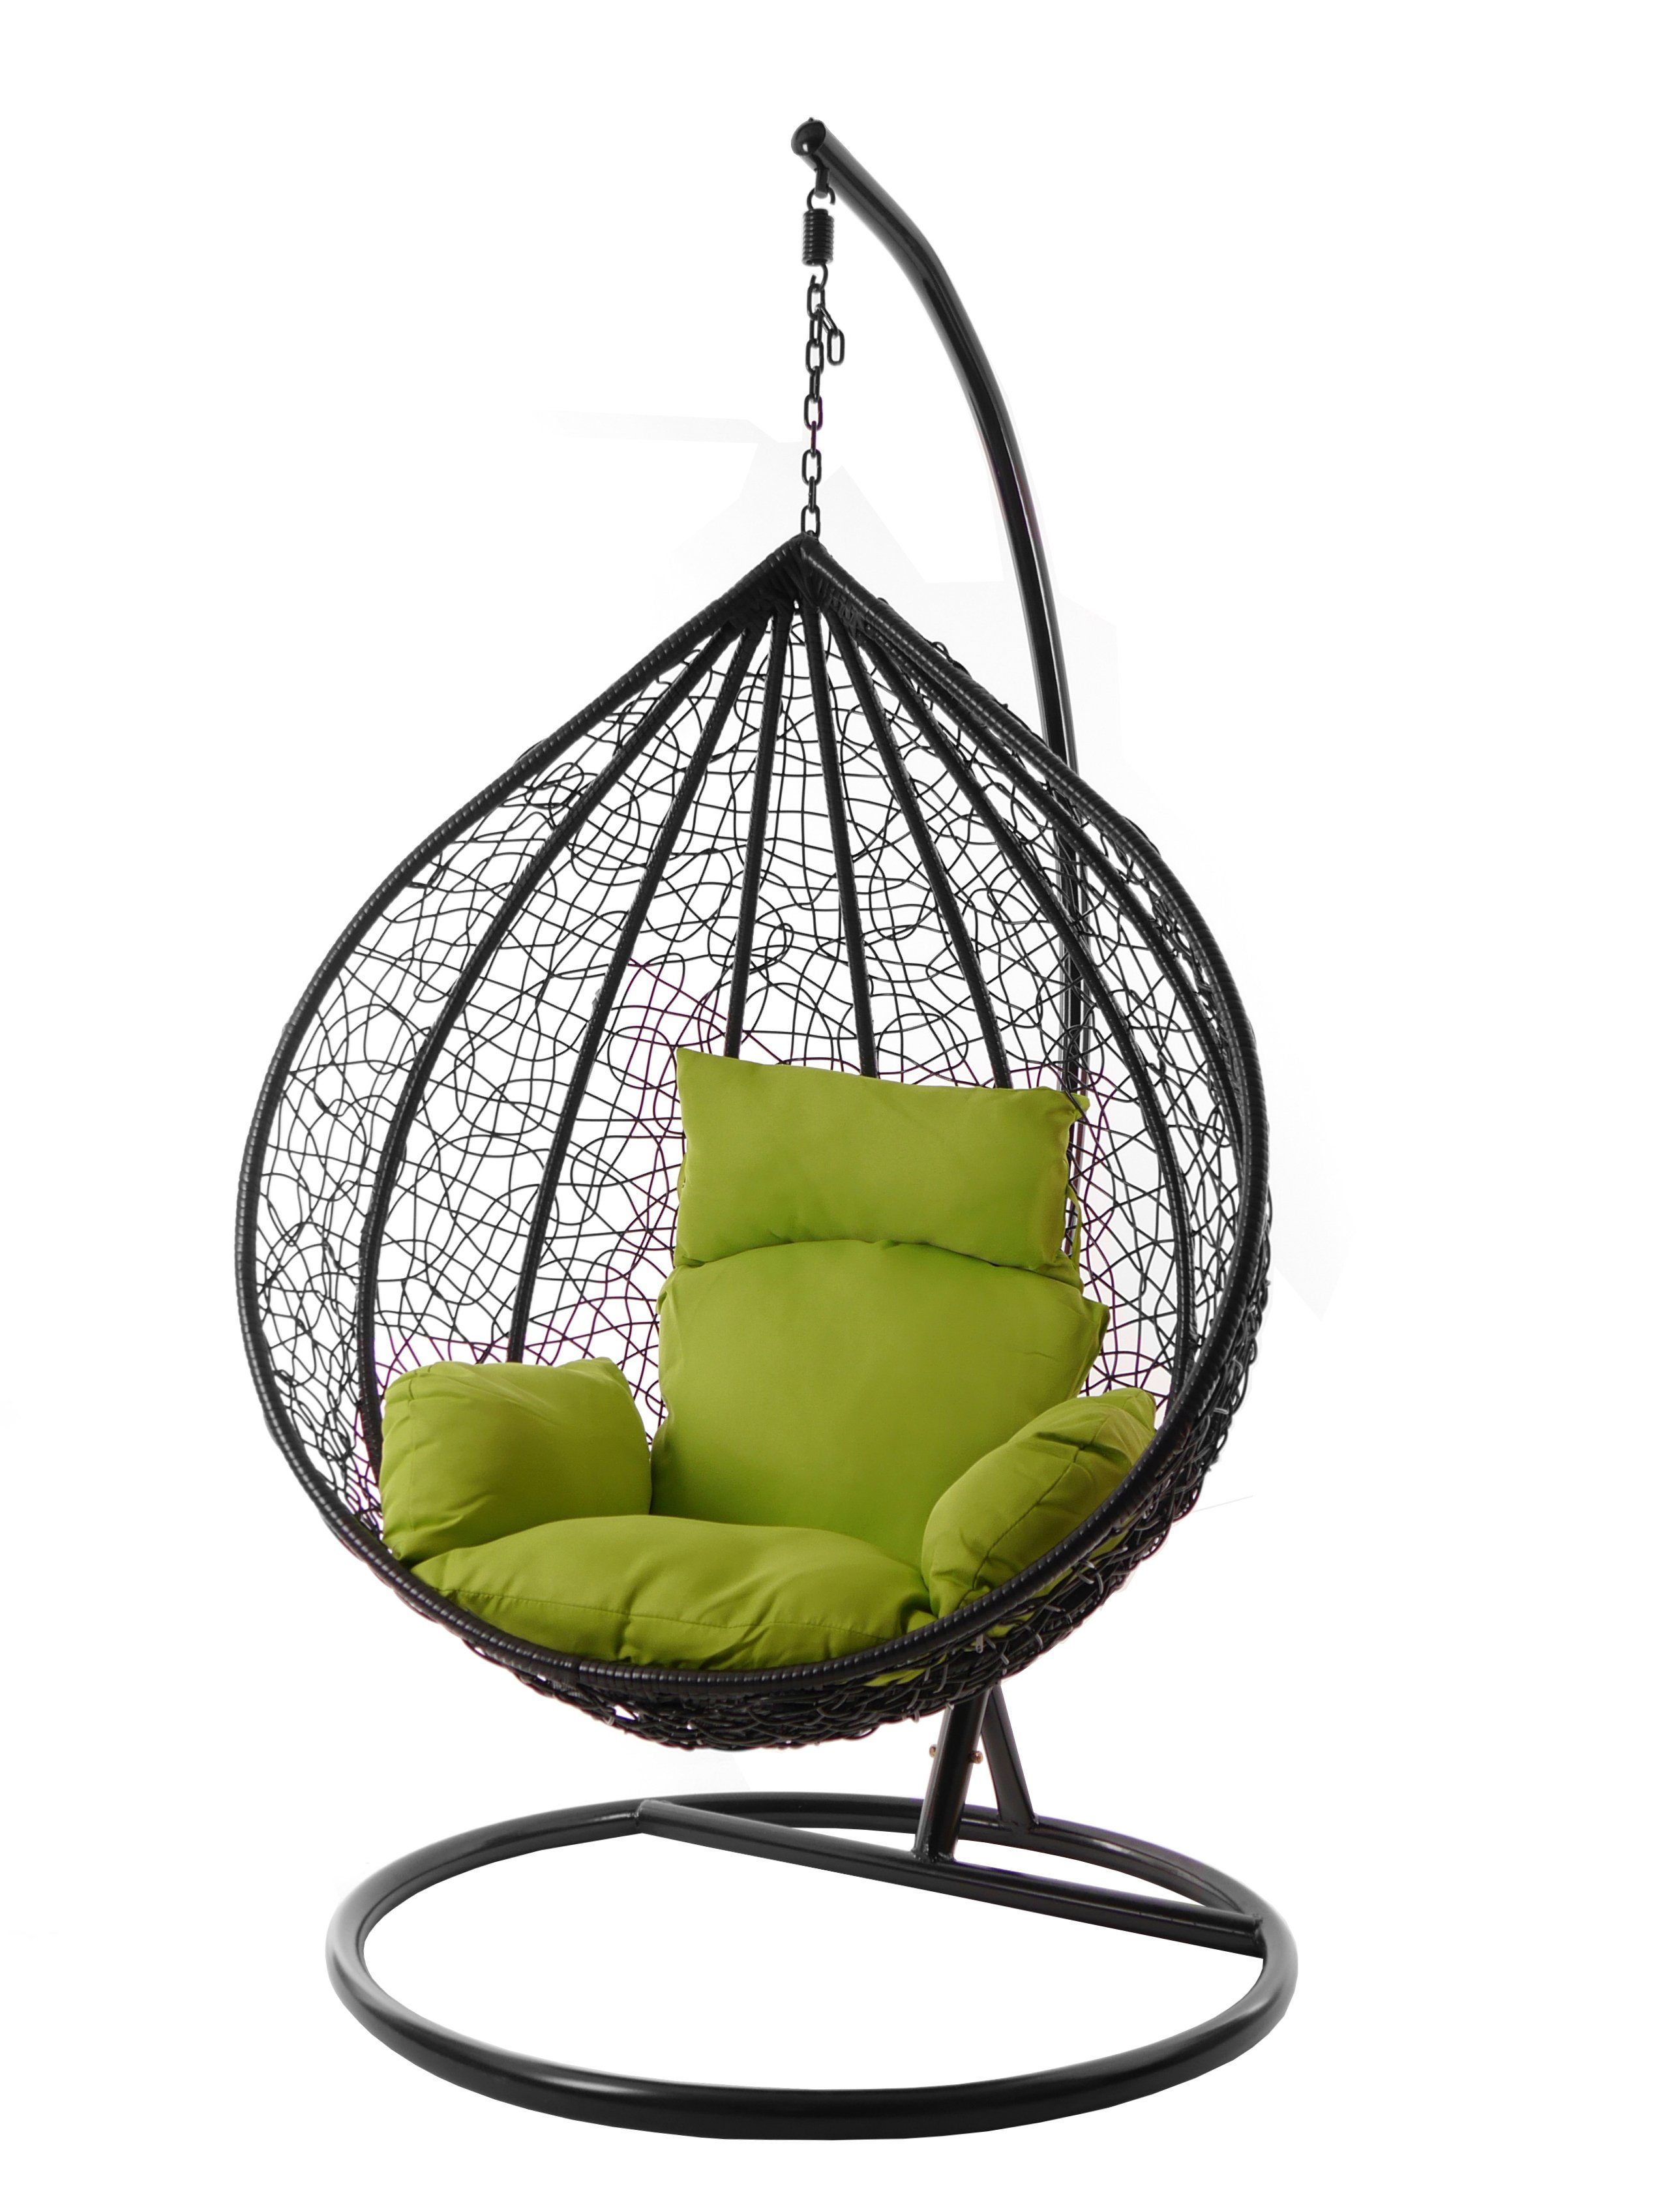 KIDEO Hängesessel Hängesessel MANACOR schwarz, XXL Swing Chair, edel, Gestell und Kissen inklusive, Nest-Kissen, verschiedene Farben apfelgrün (6068 apple green)